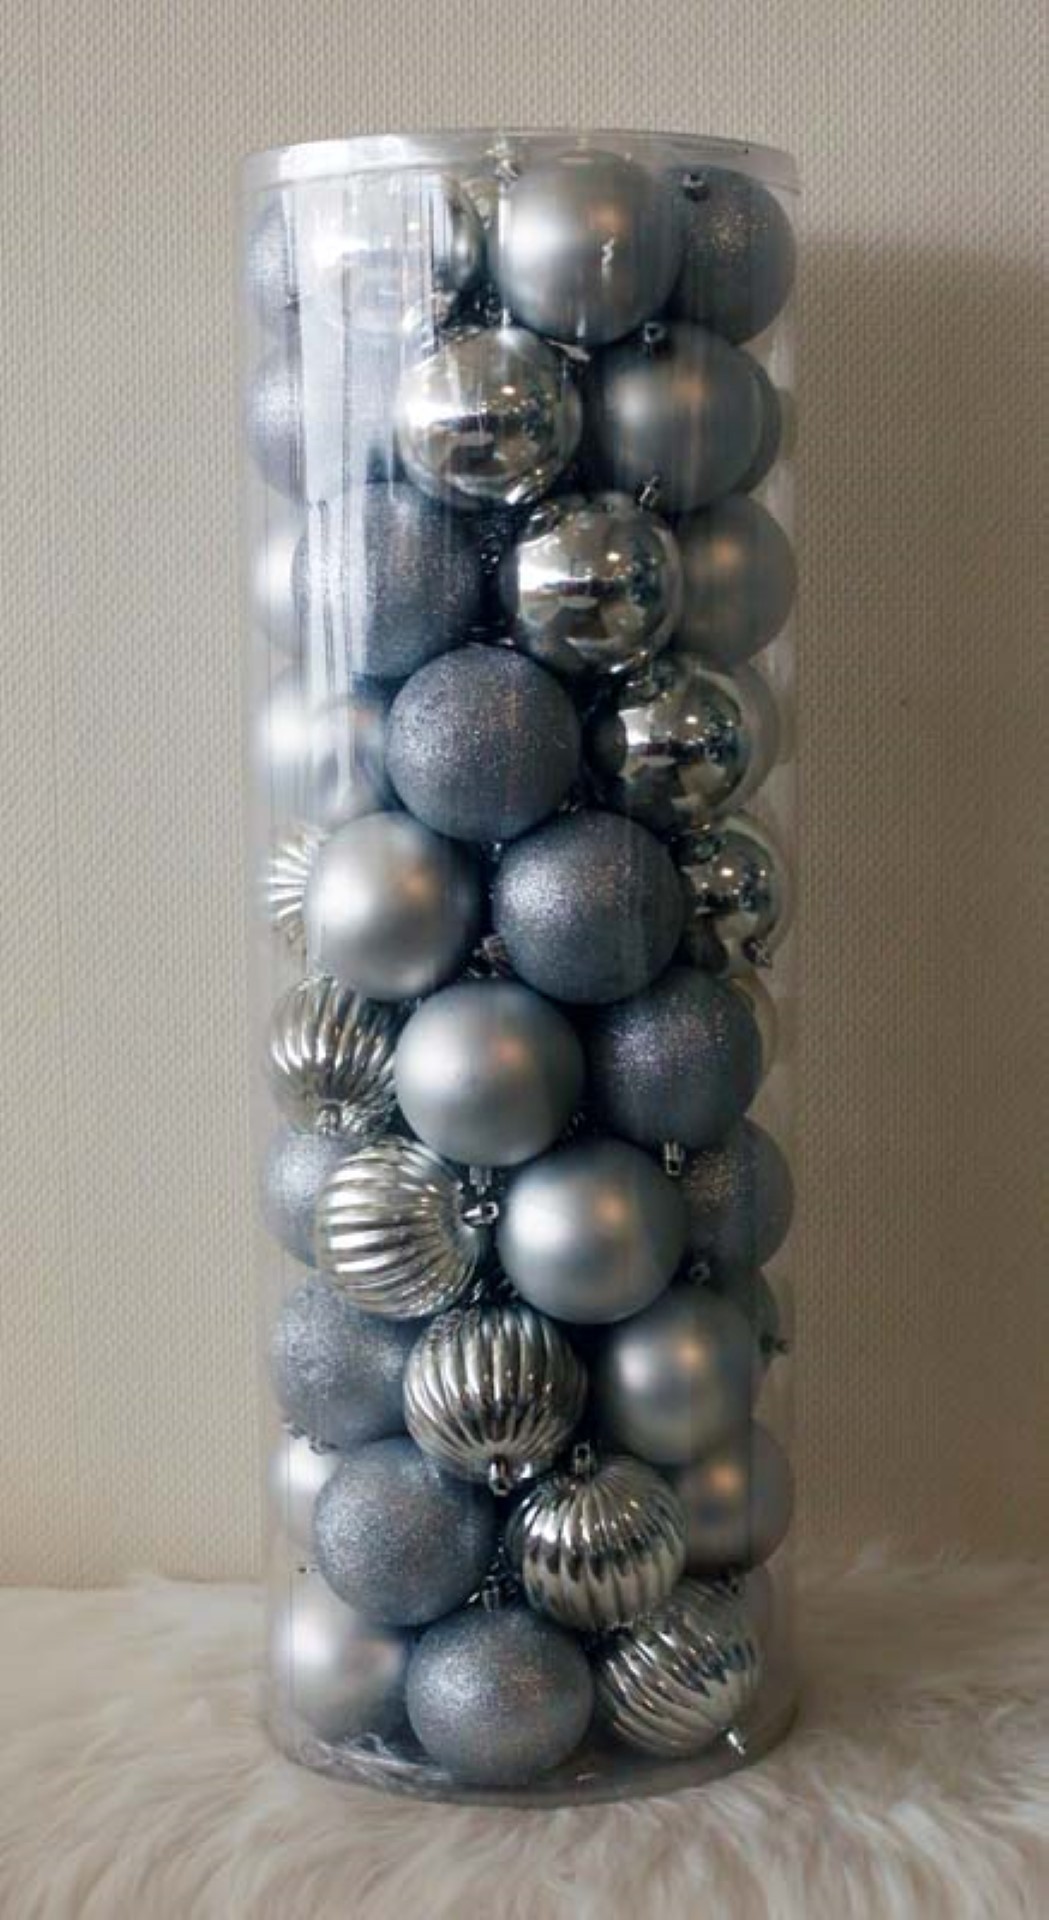 69 Onbreekbare kerstballen in koker doorsnee 8 cm zilver watermeloen - Oosterik Home